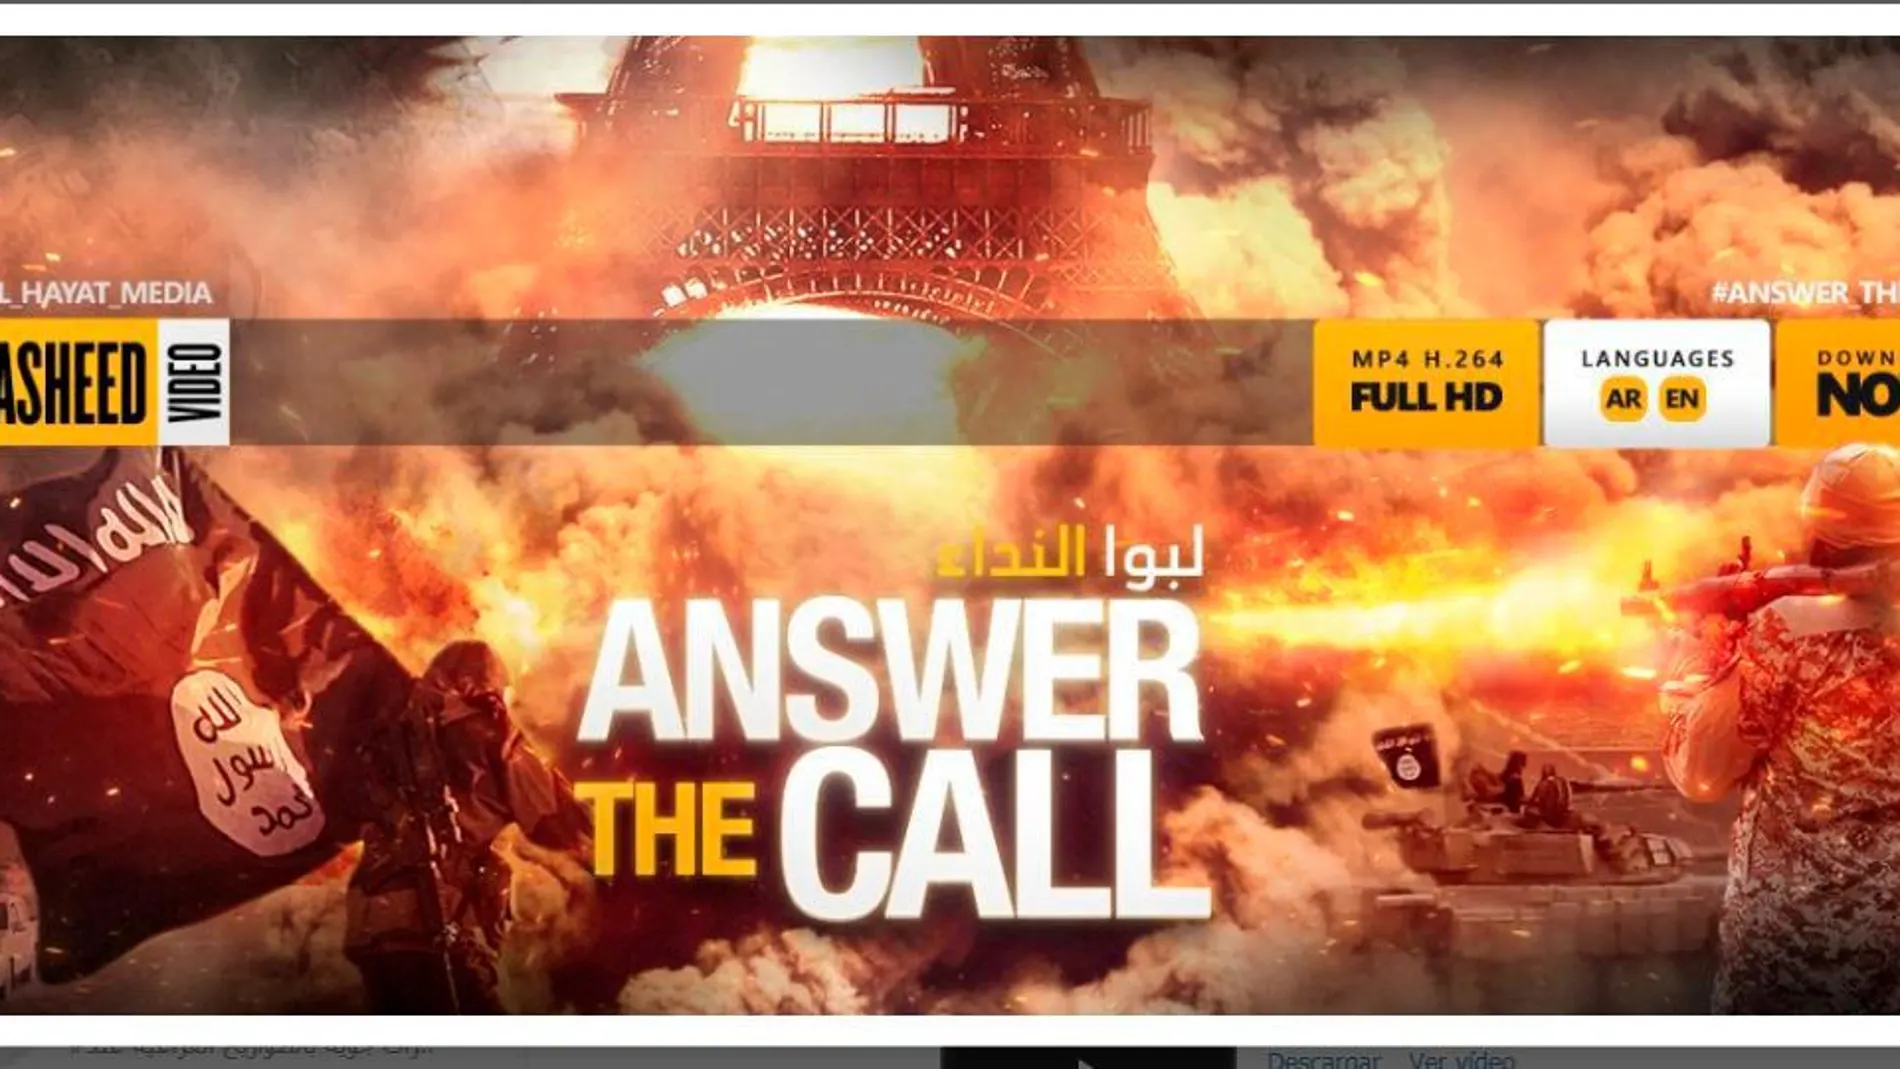 El Estado Islámico ha difundido este cartel en el que pide, en varios idiomas, a los musulmanes que respondan a "la llamada"y se una a la jihad